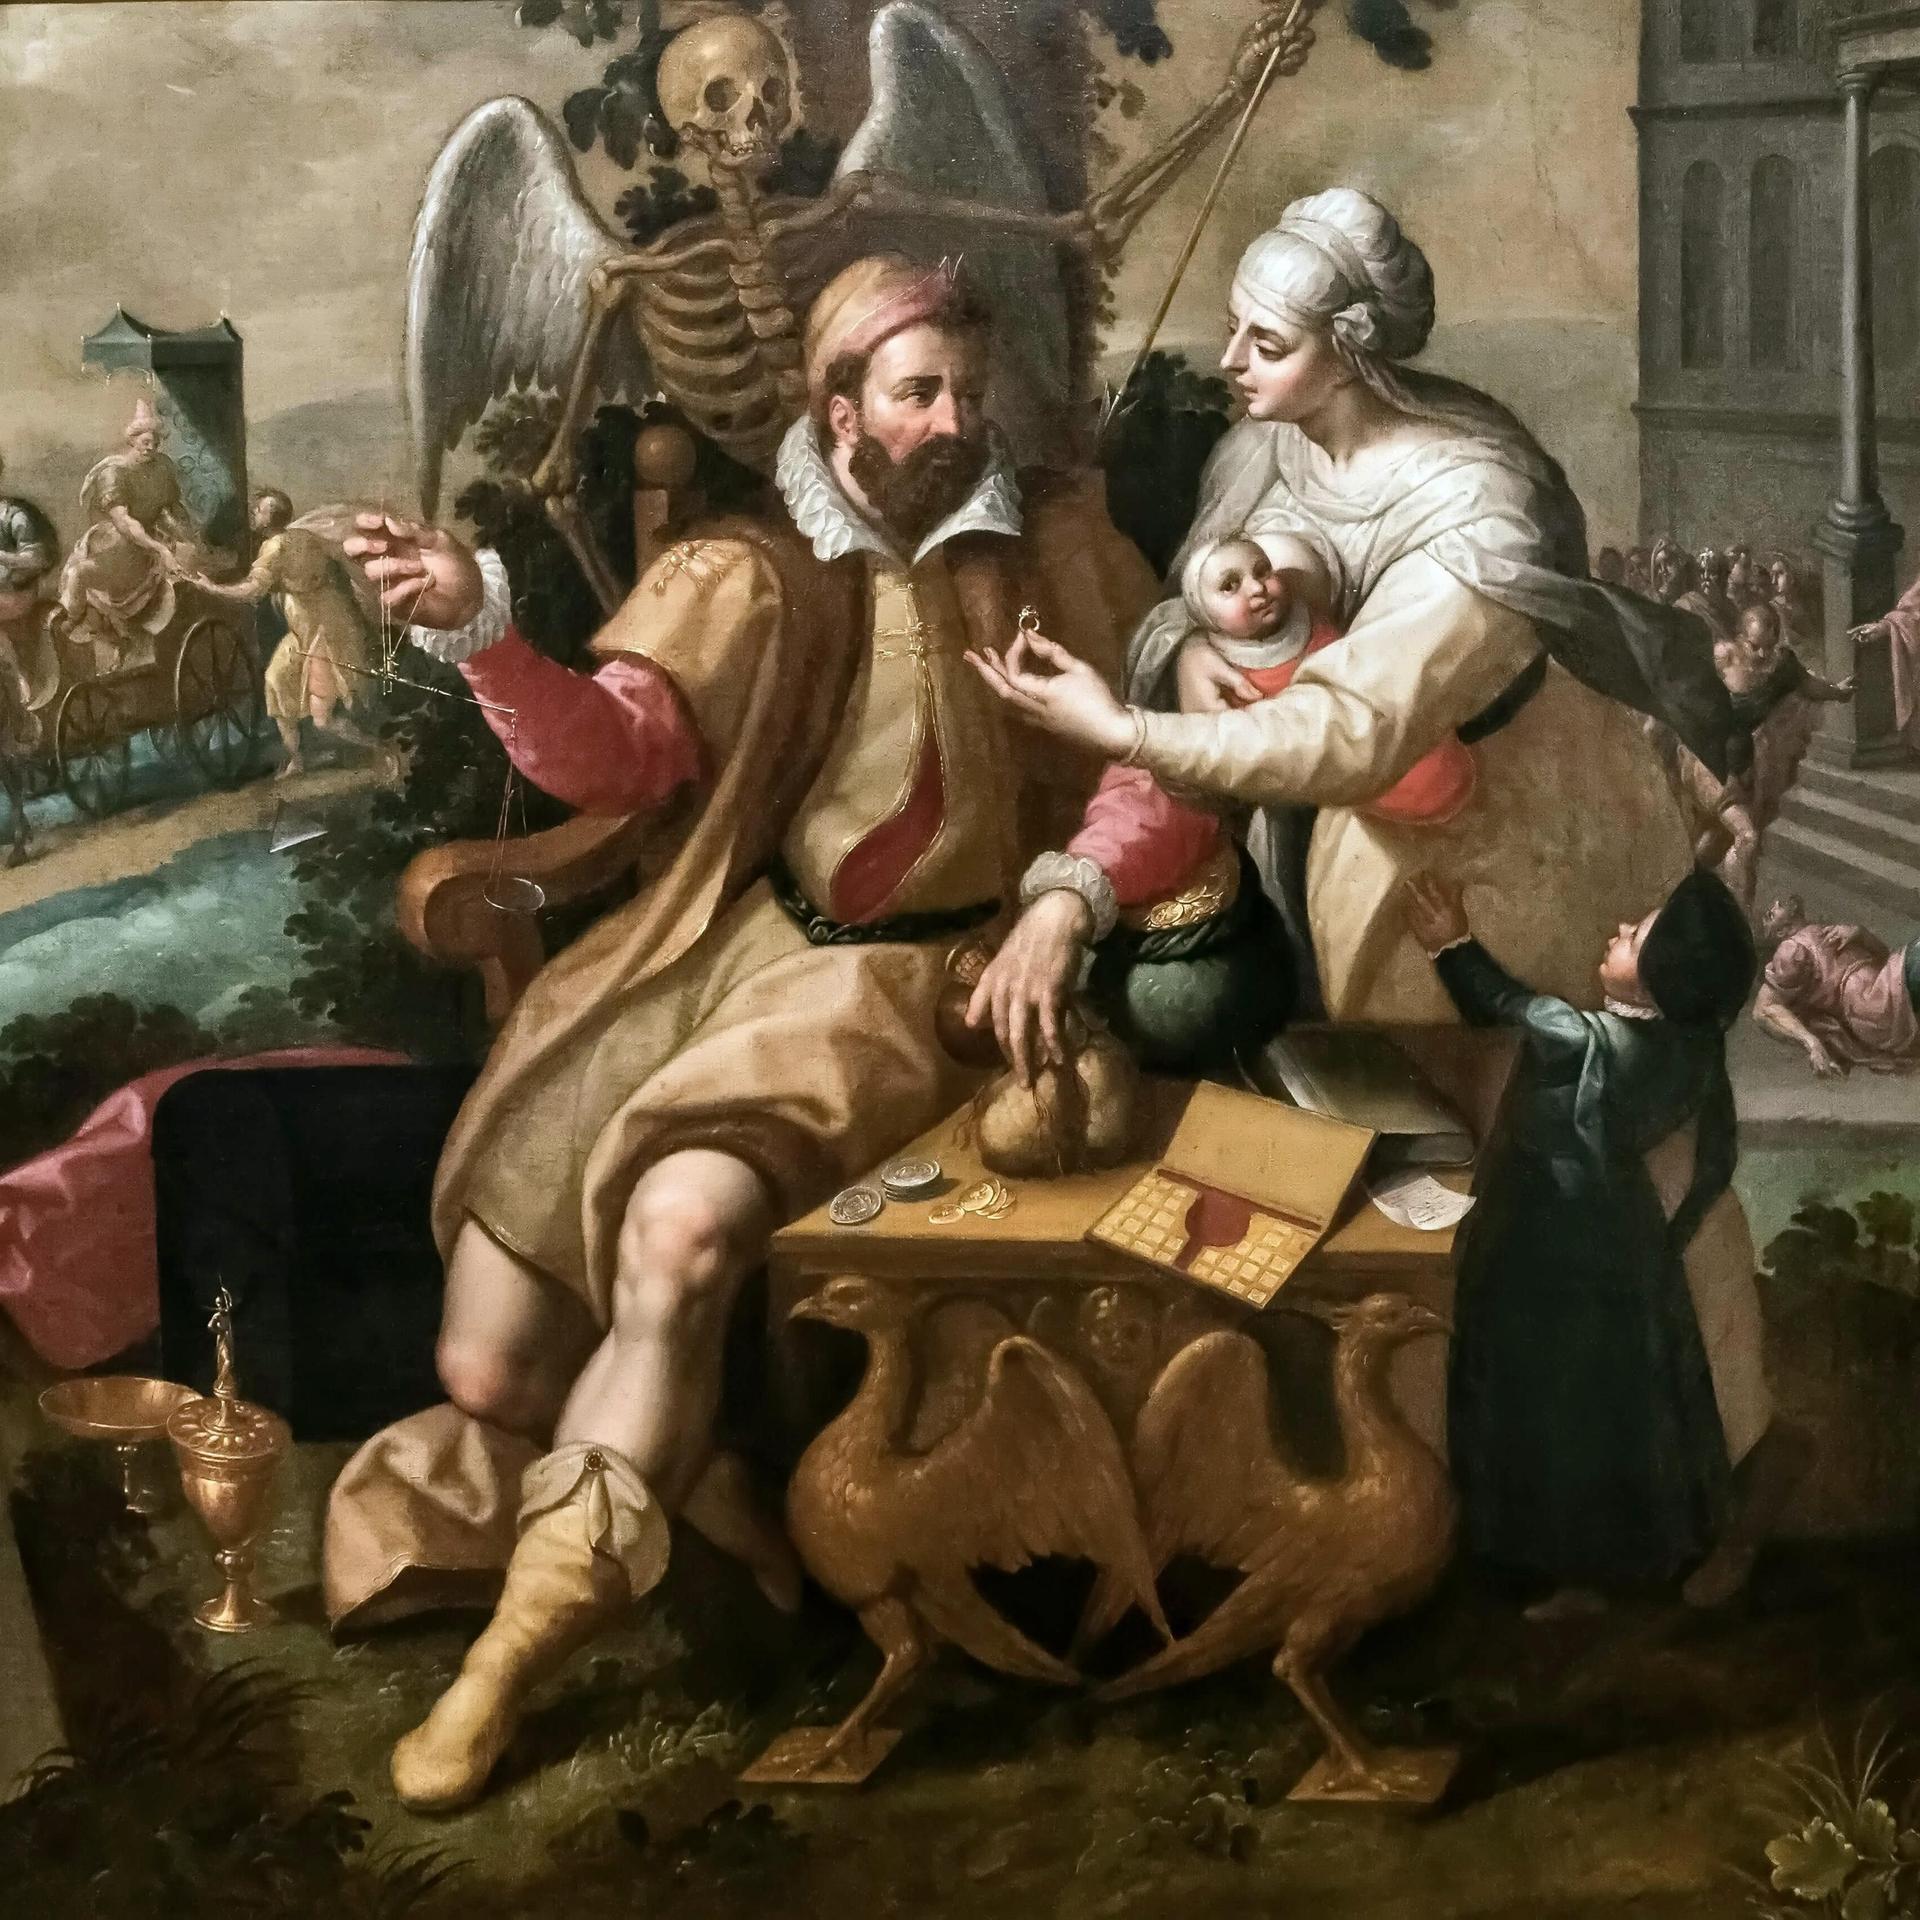 Das allegorische Gemälde "Die sieben Todsünden: Gier" zeigt einen prächtig gekleideten Kaufmann, dem eine junge Frau mit Baby einen wertvollen Ring reicht.